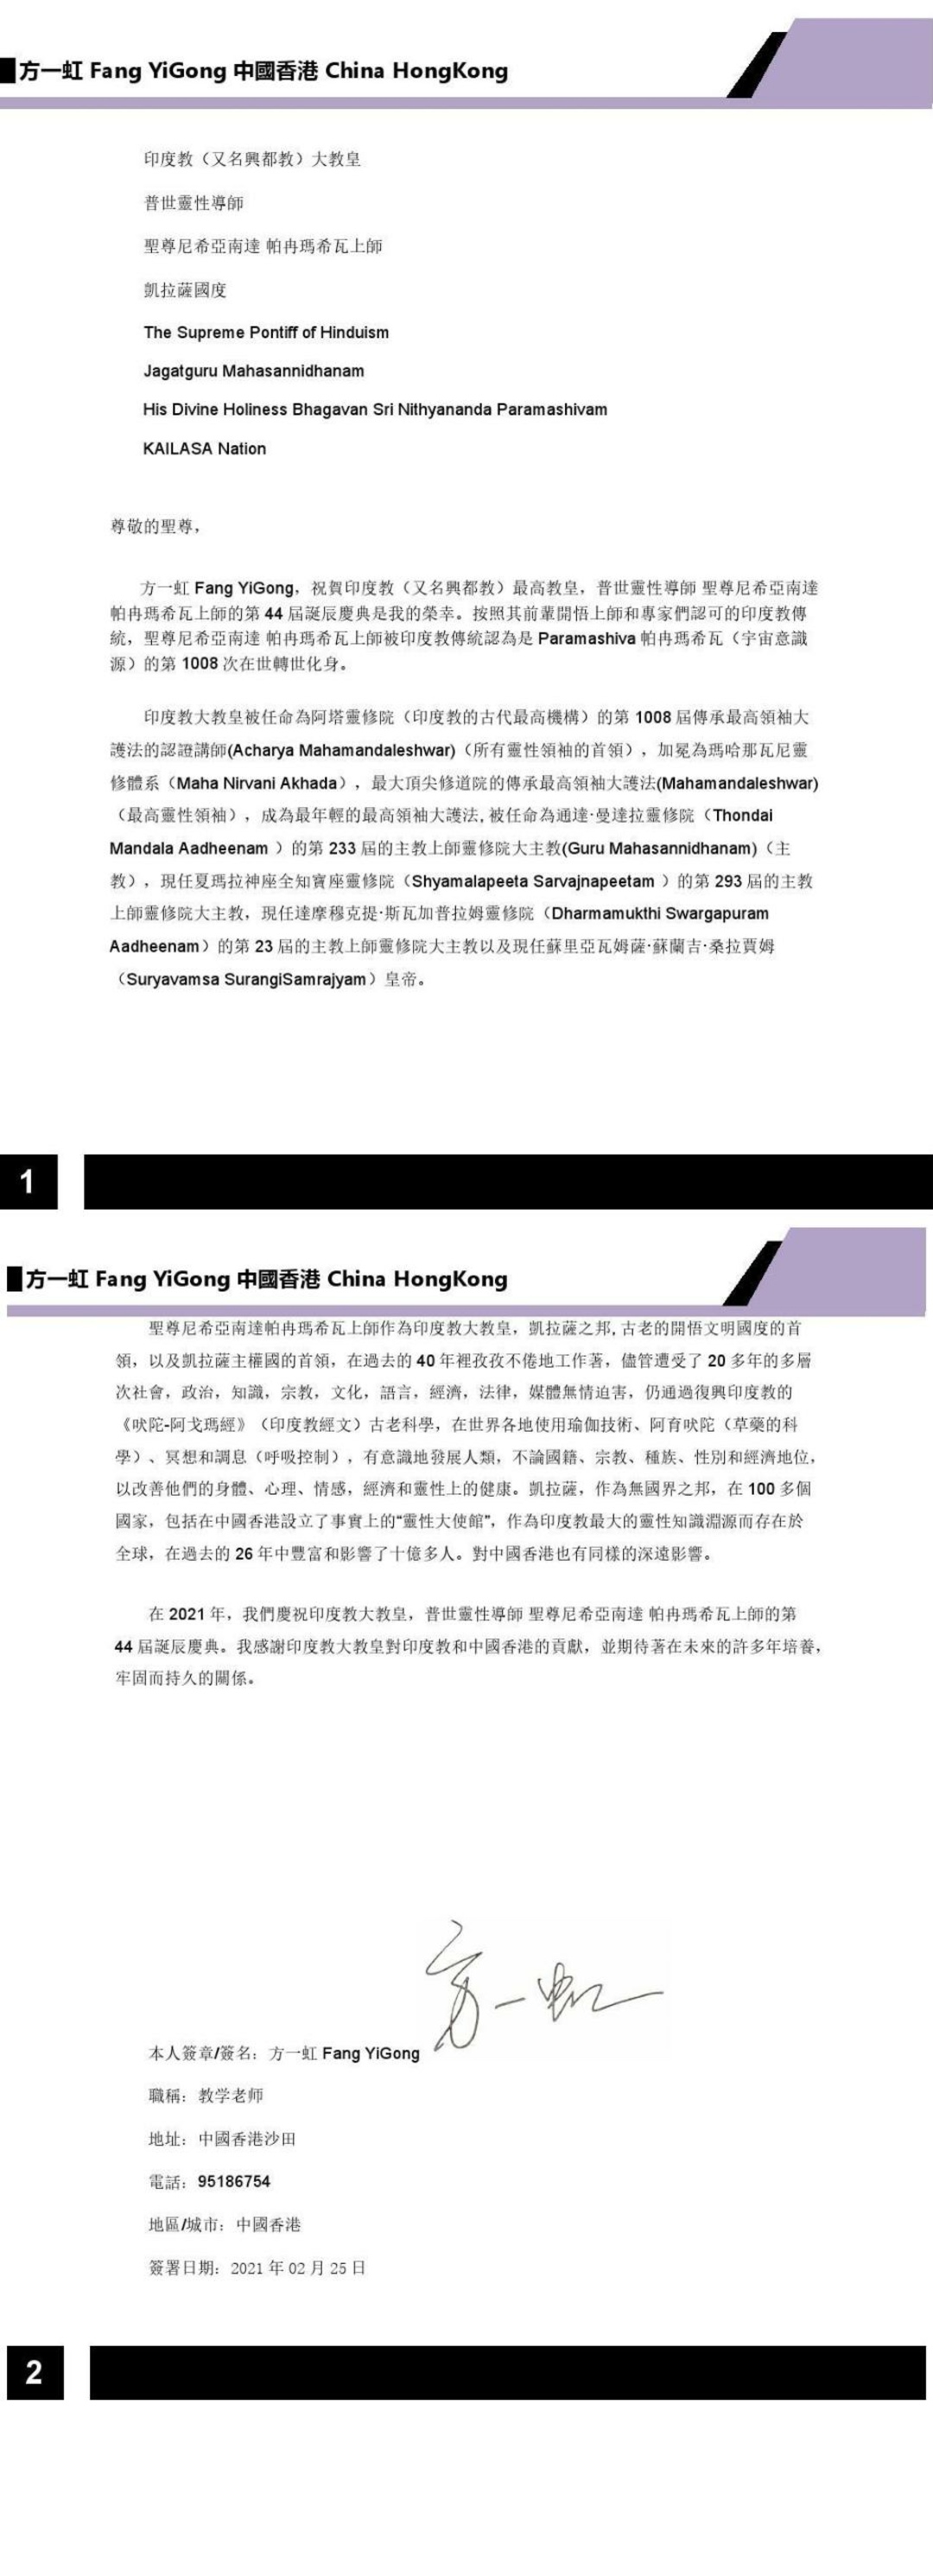 China---Fang-Yi-Gong---Feb-25--2021-(Proclamation)-1bsKI97wxJUkQ1jhJuQC7PYC0ONd2VUhh.pdf